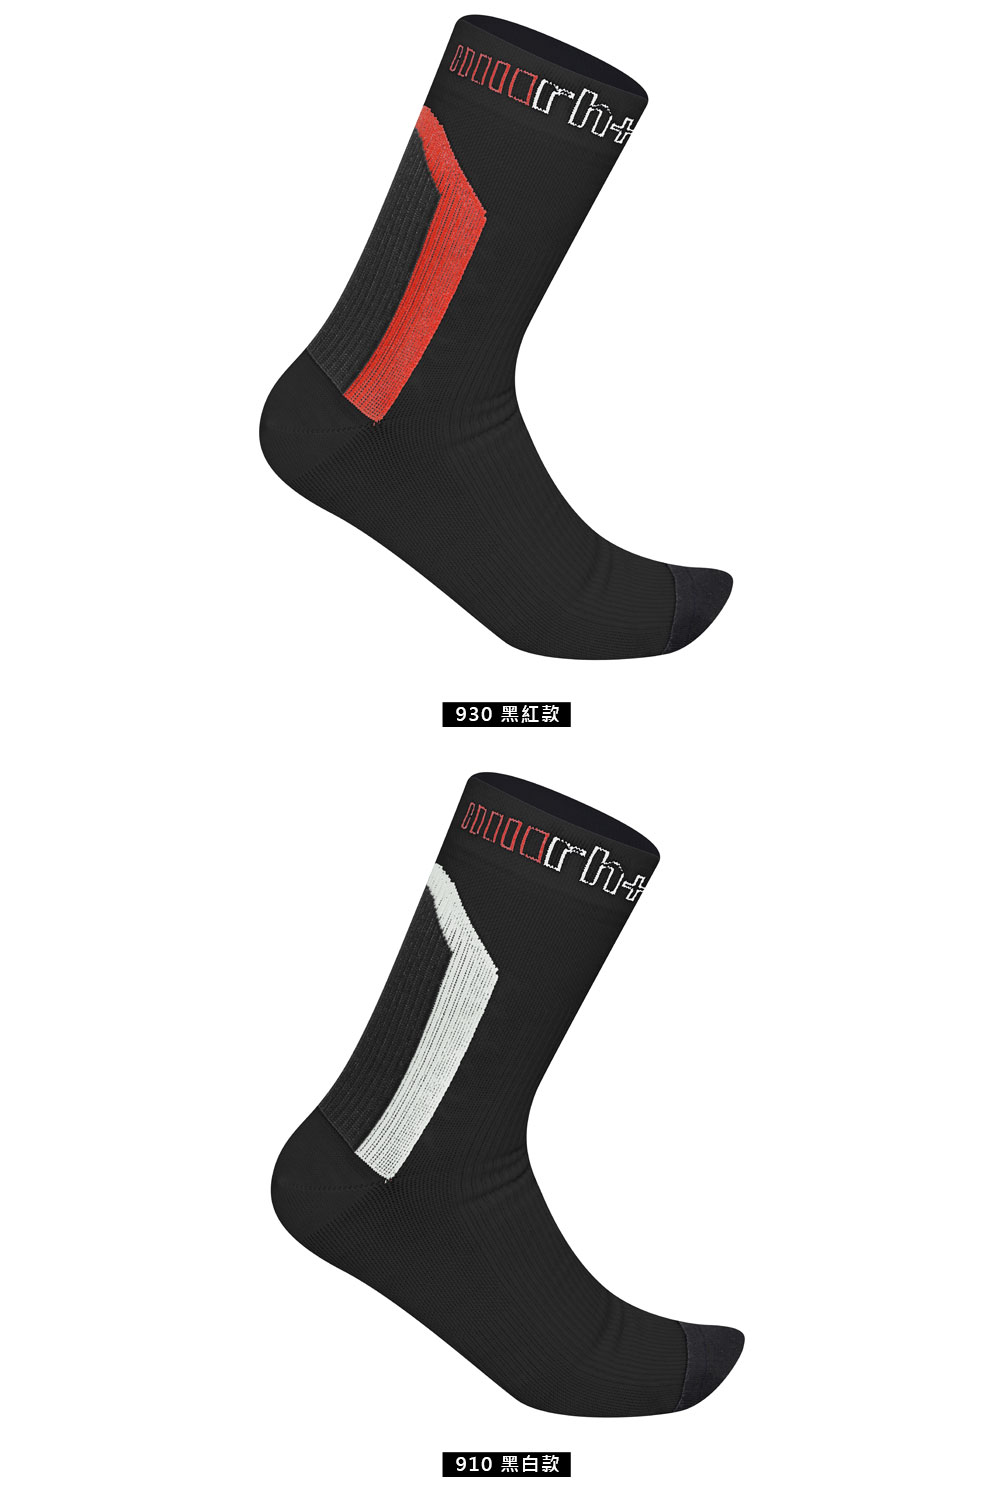 ZeroRH+ 義大利AIRX高筒15CM運動襪(黑/紅、黑